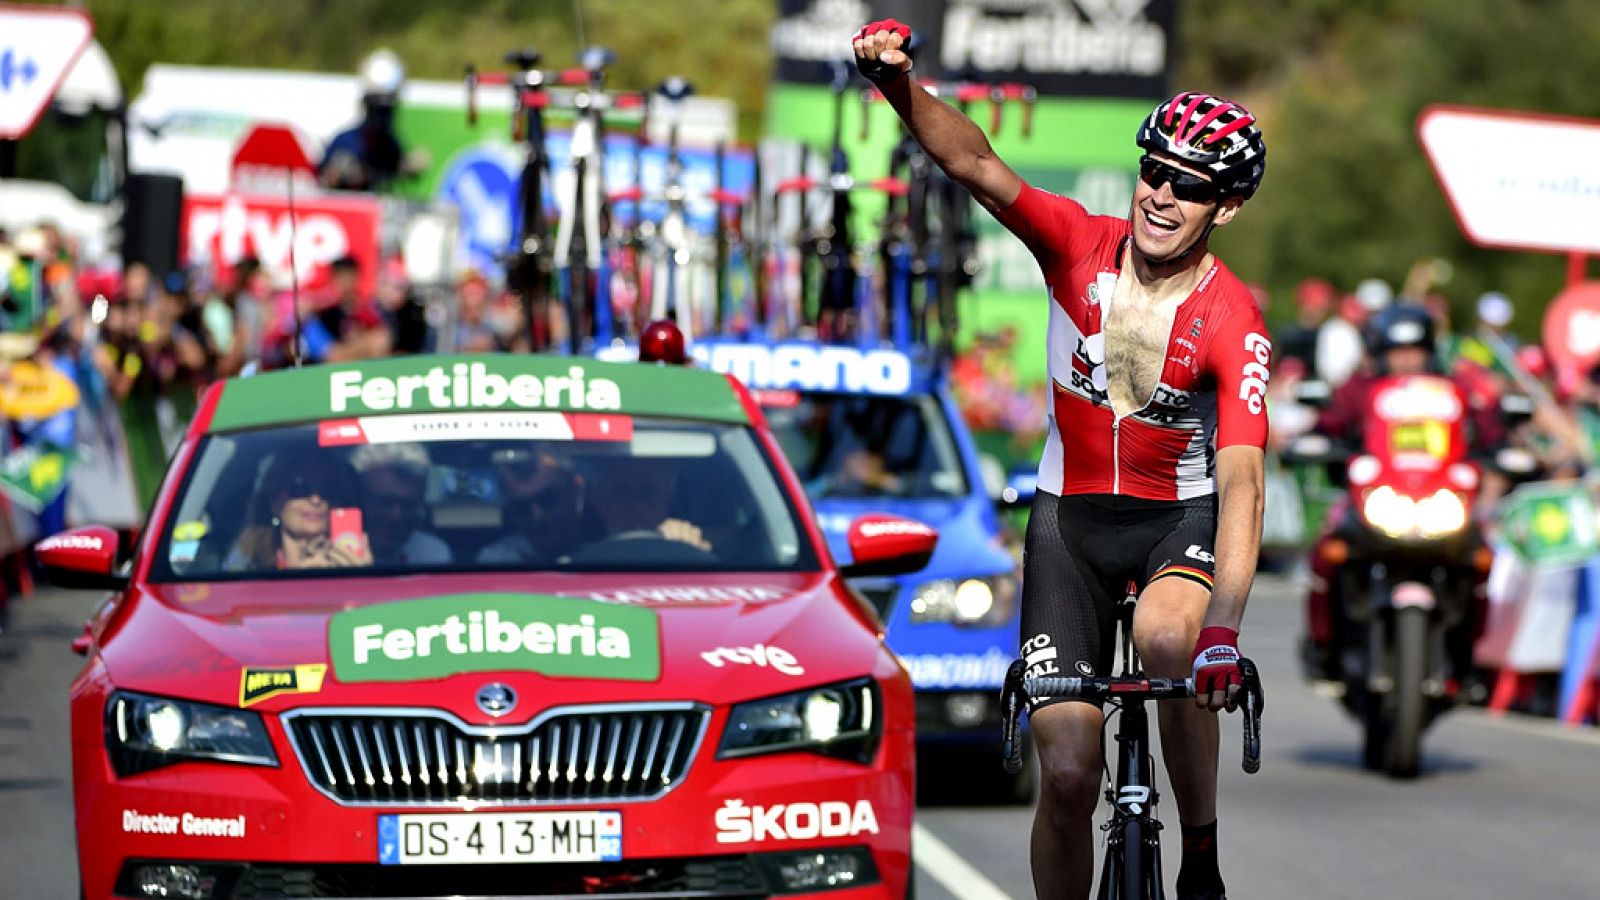 El belga Sander Armée (Lotto-Soudal) se ha impuesto en la decimoctava etapa de la Vuelta a España, entre Suances y Santo Toribio de Liébana, de 169 kilómetros, en la que el británico Chris Froome (Sky) mantuvo el maillot rojo de líder.